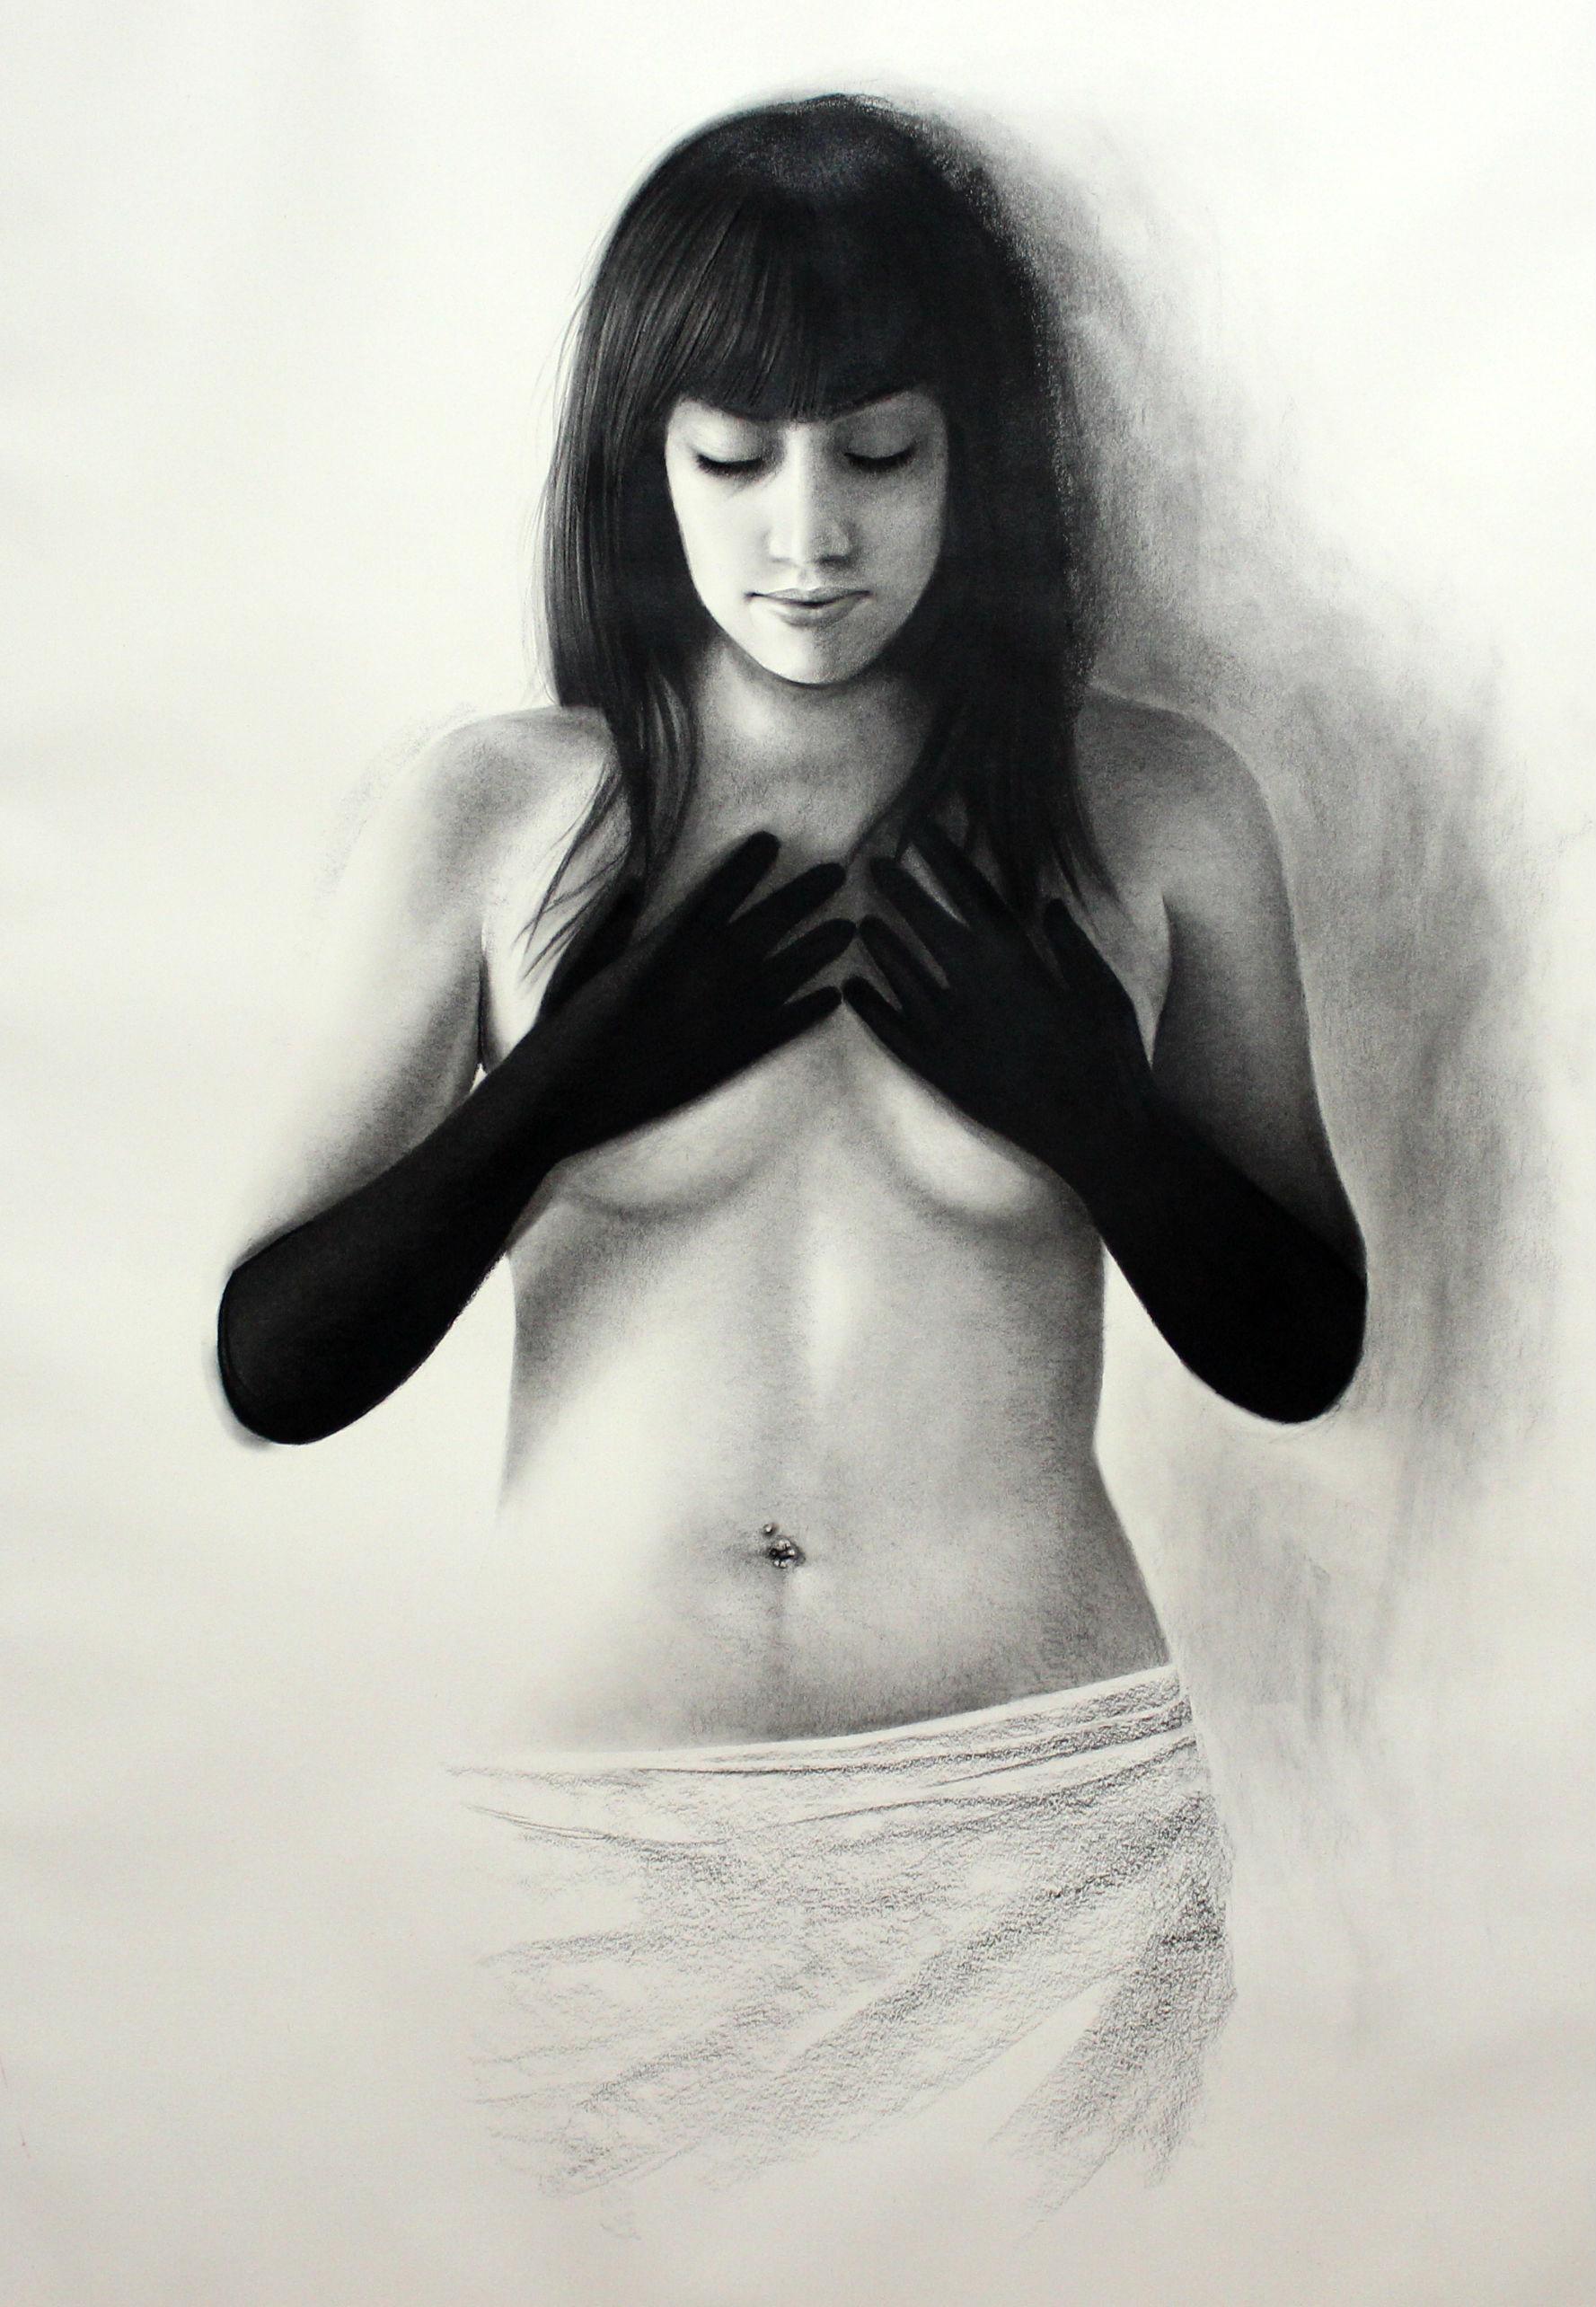 Woman mit schwarzen Handschuhen, nackte Frau mit Händen an ihren Breasts, Kohlezeichnung